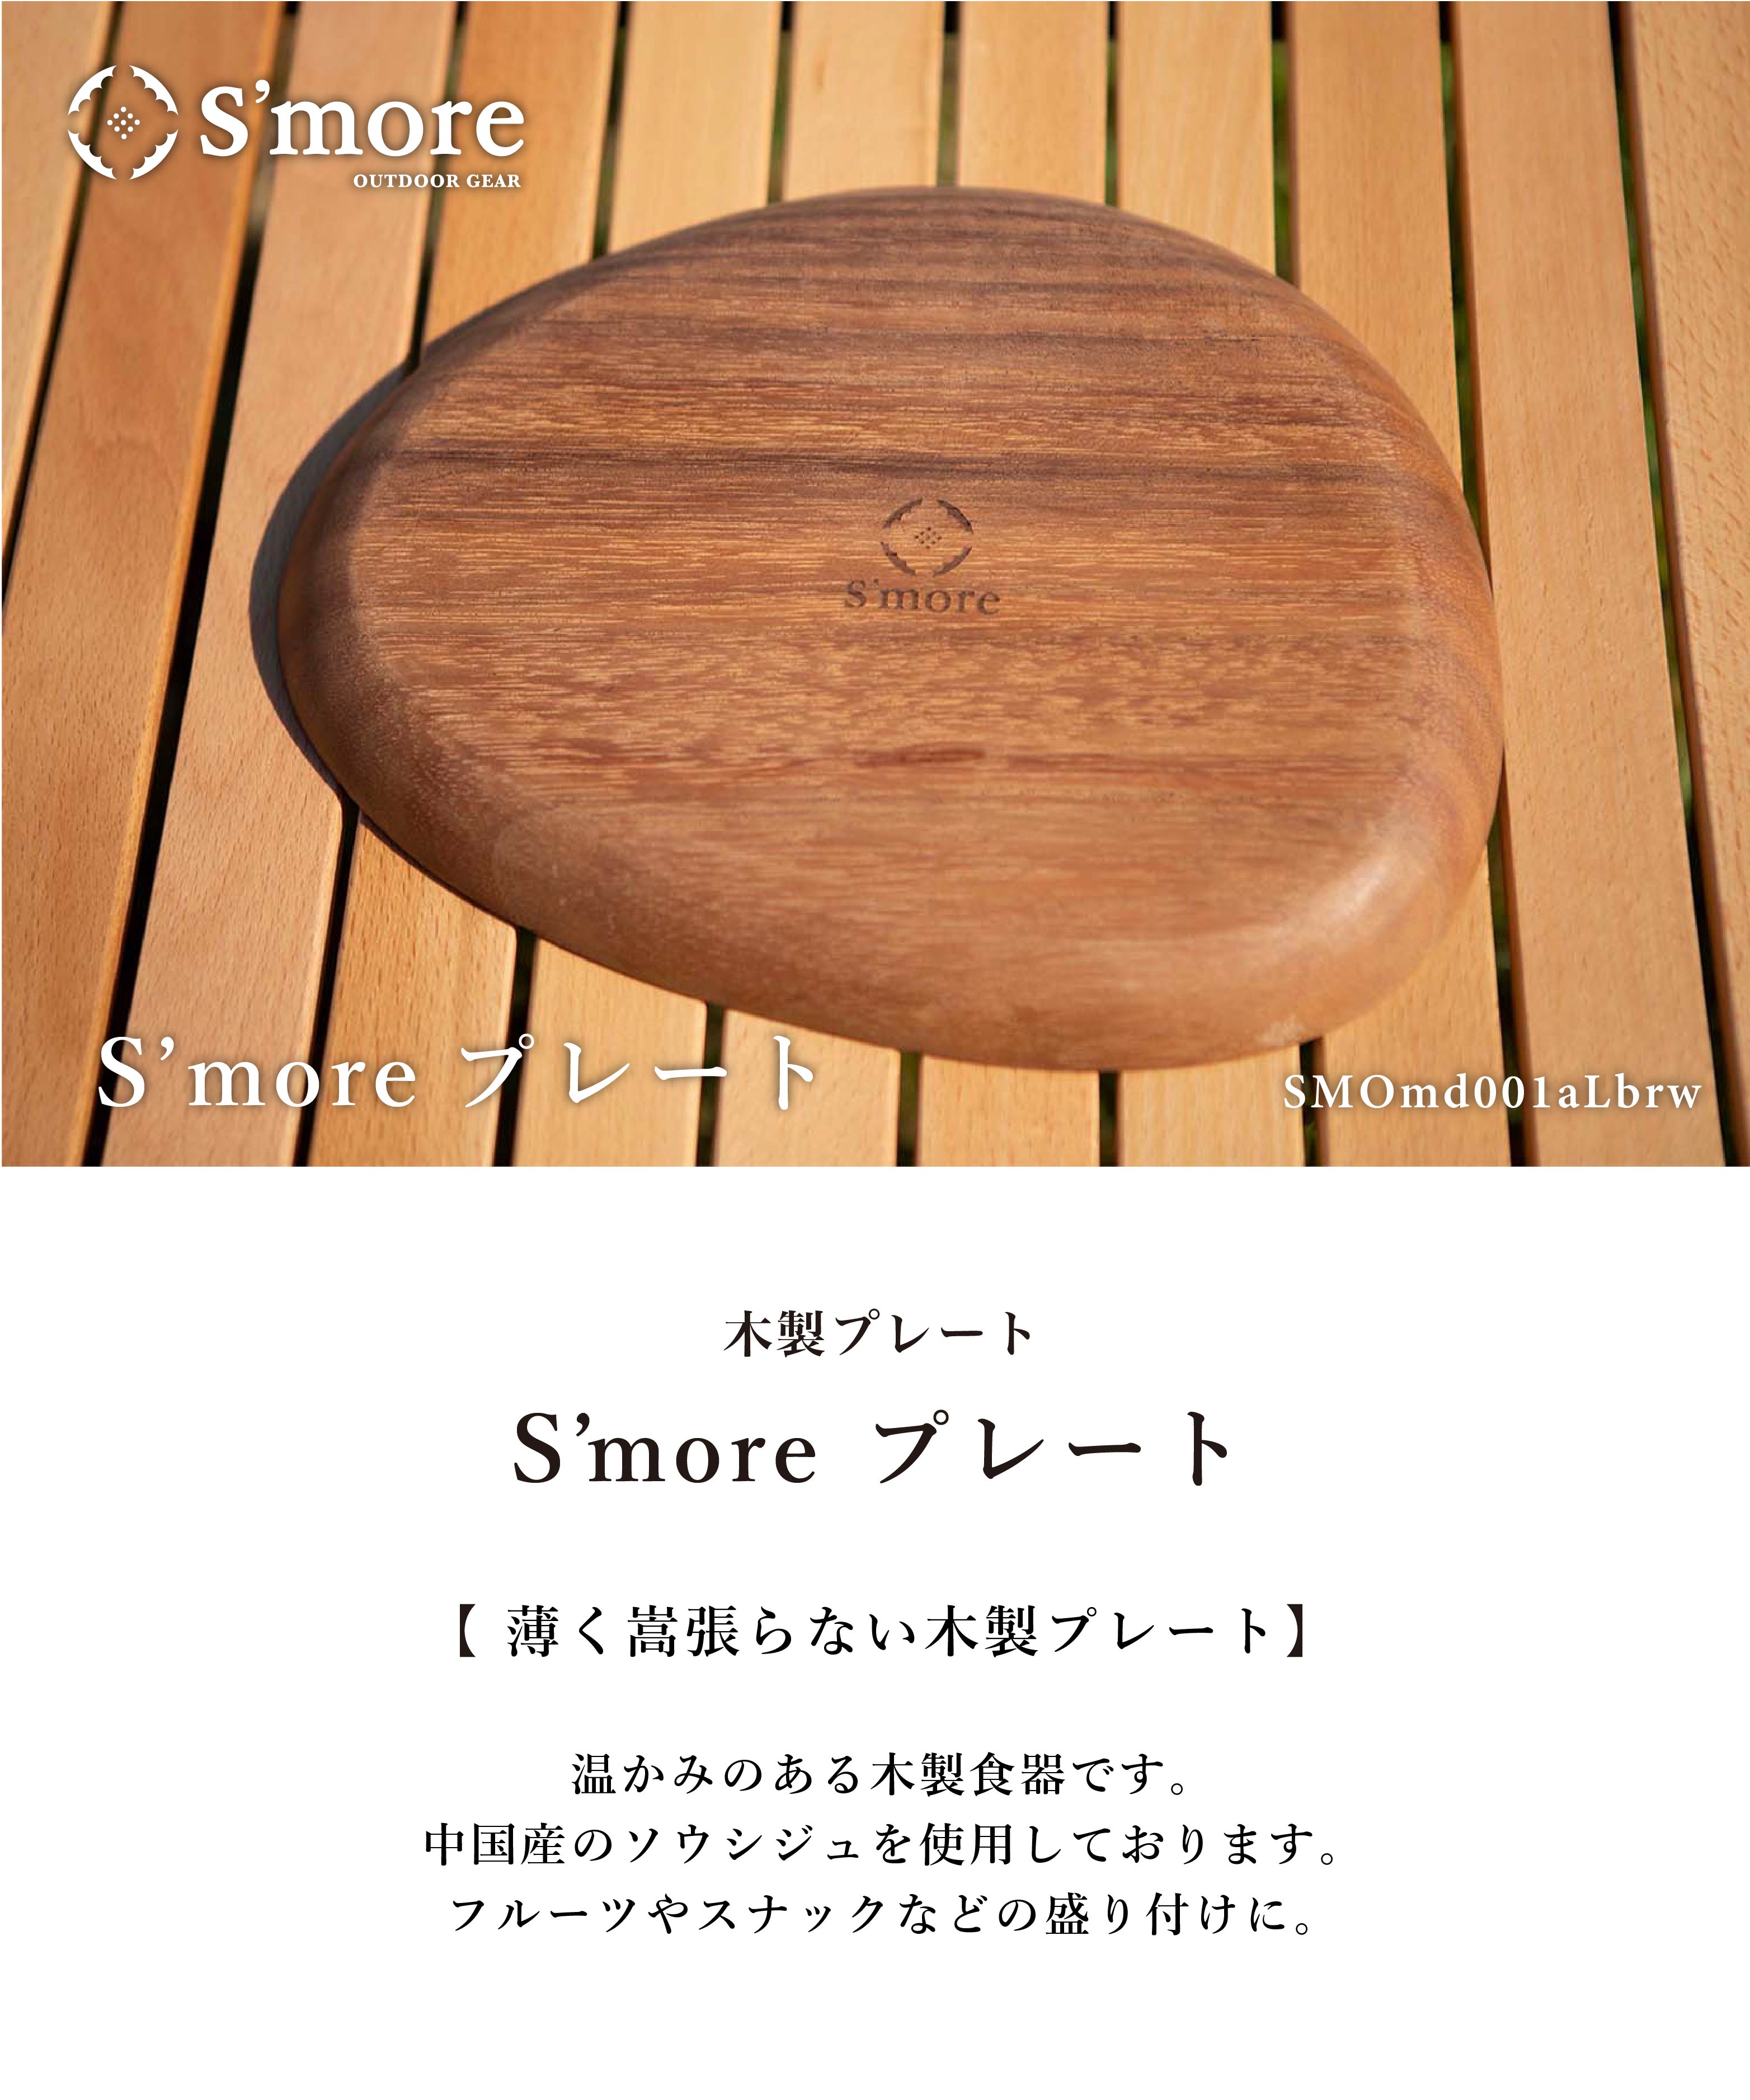 スモア Woodi plate 26*21